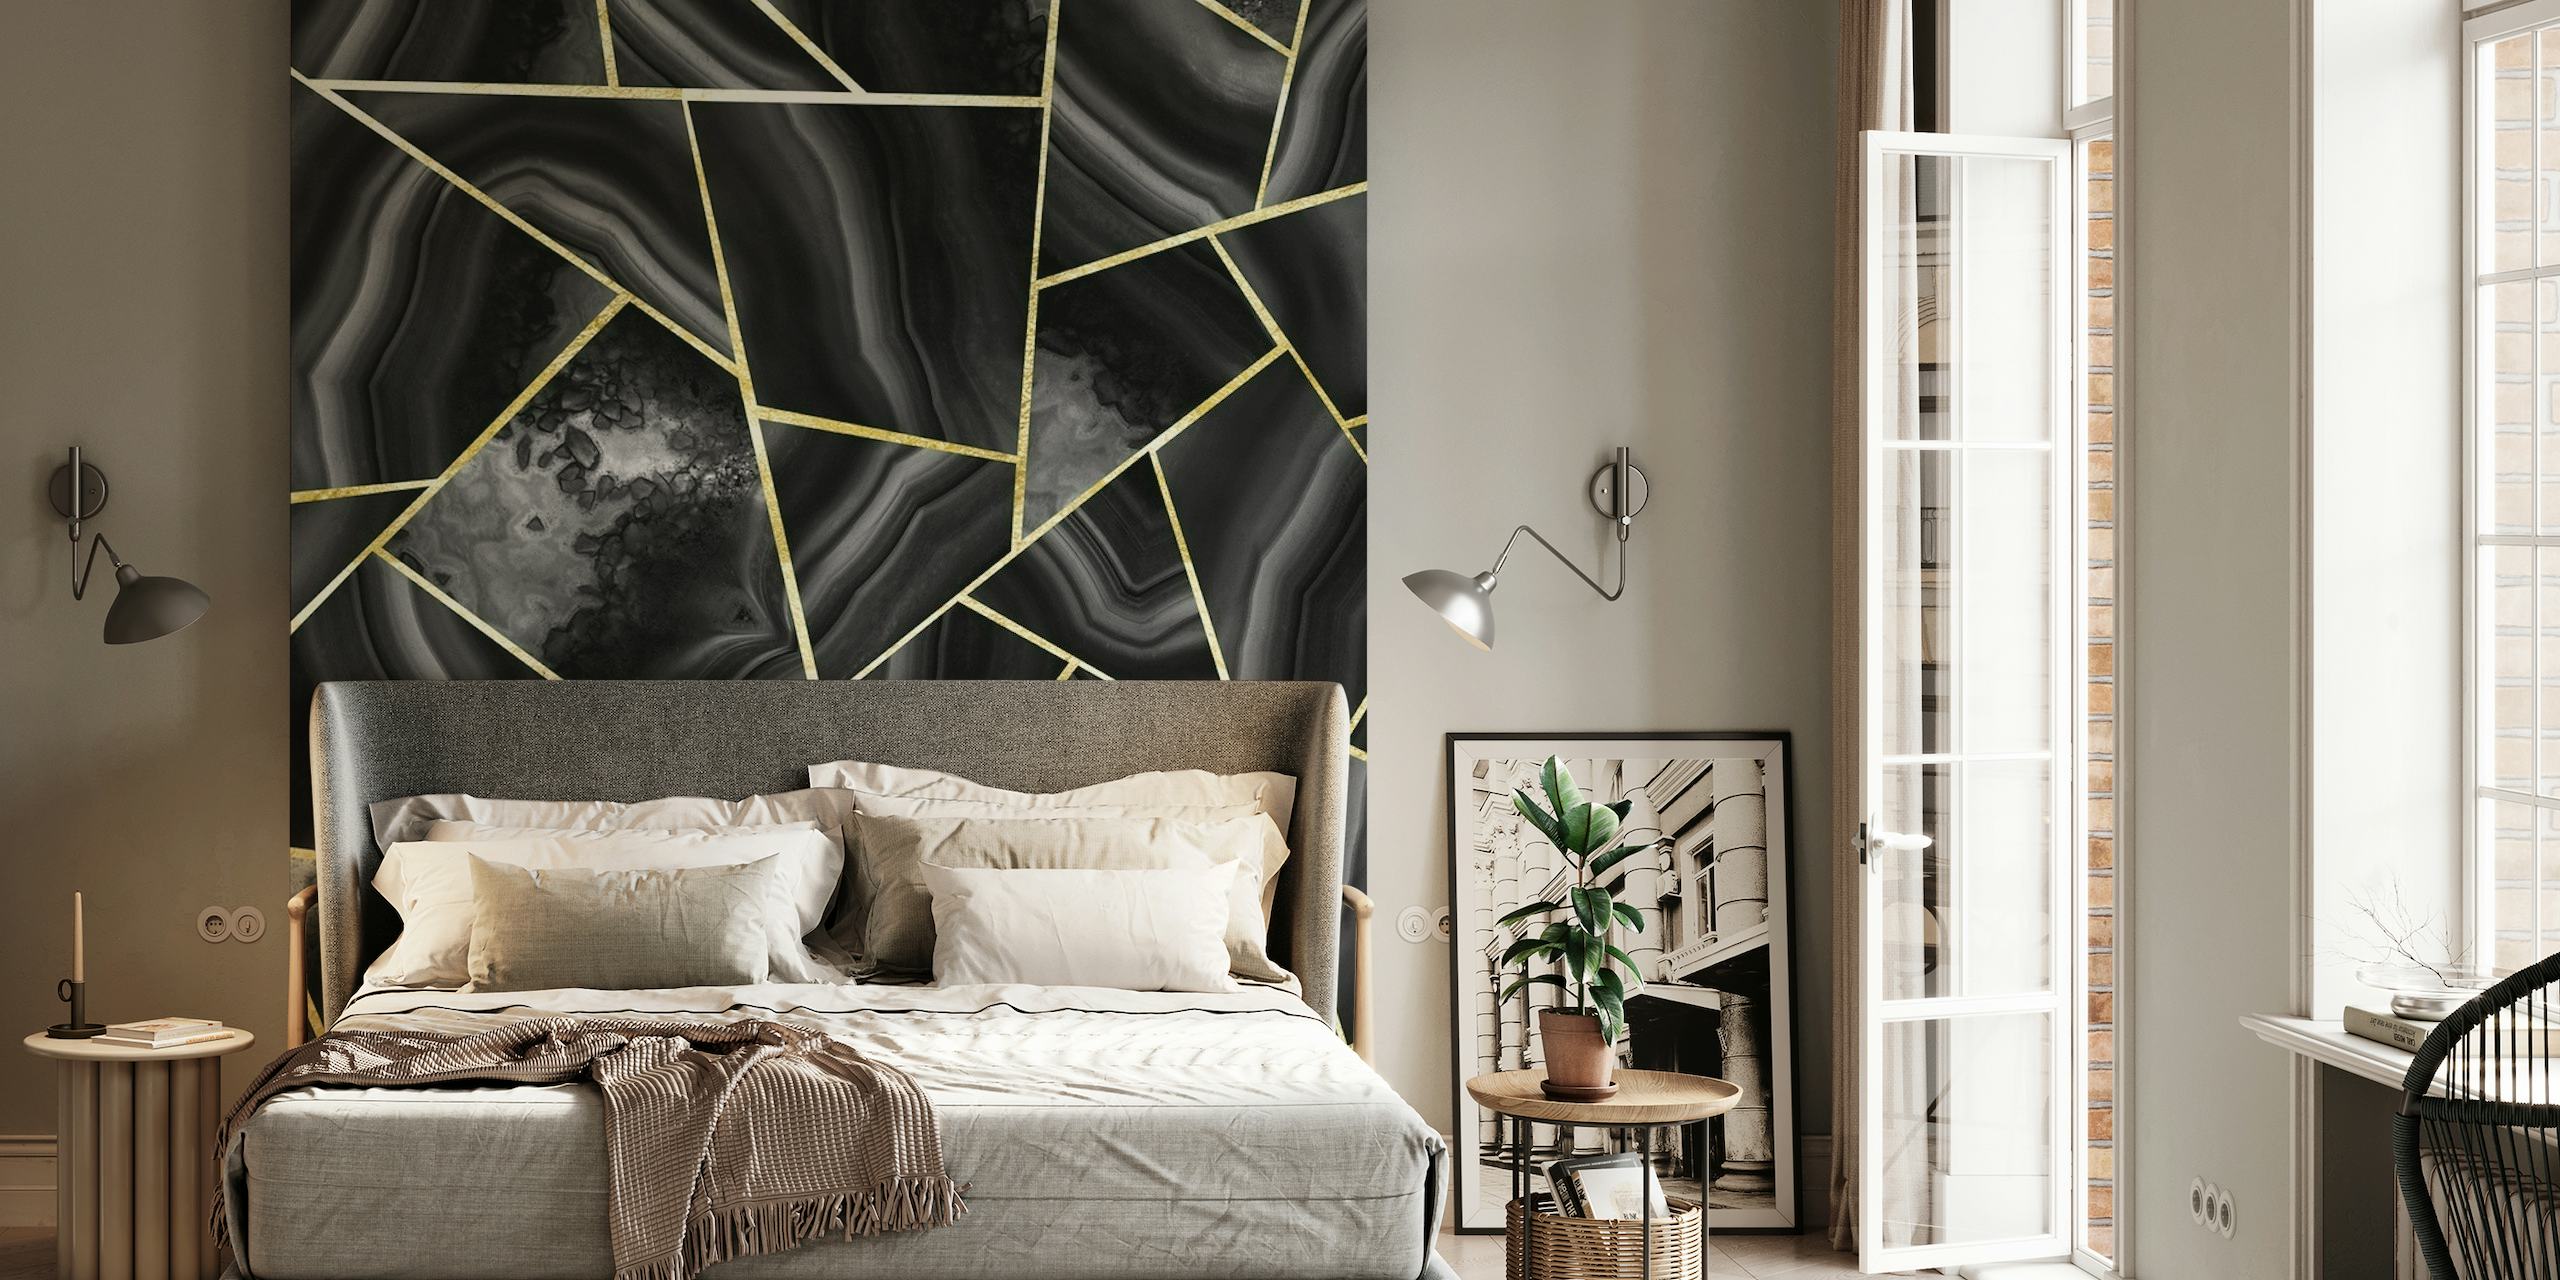 Fotomural inspirado en ágata negra y dorada con líneas geométricas